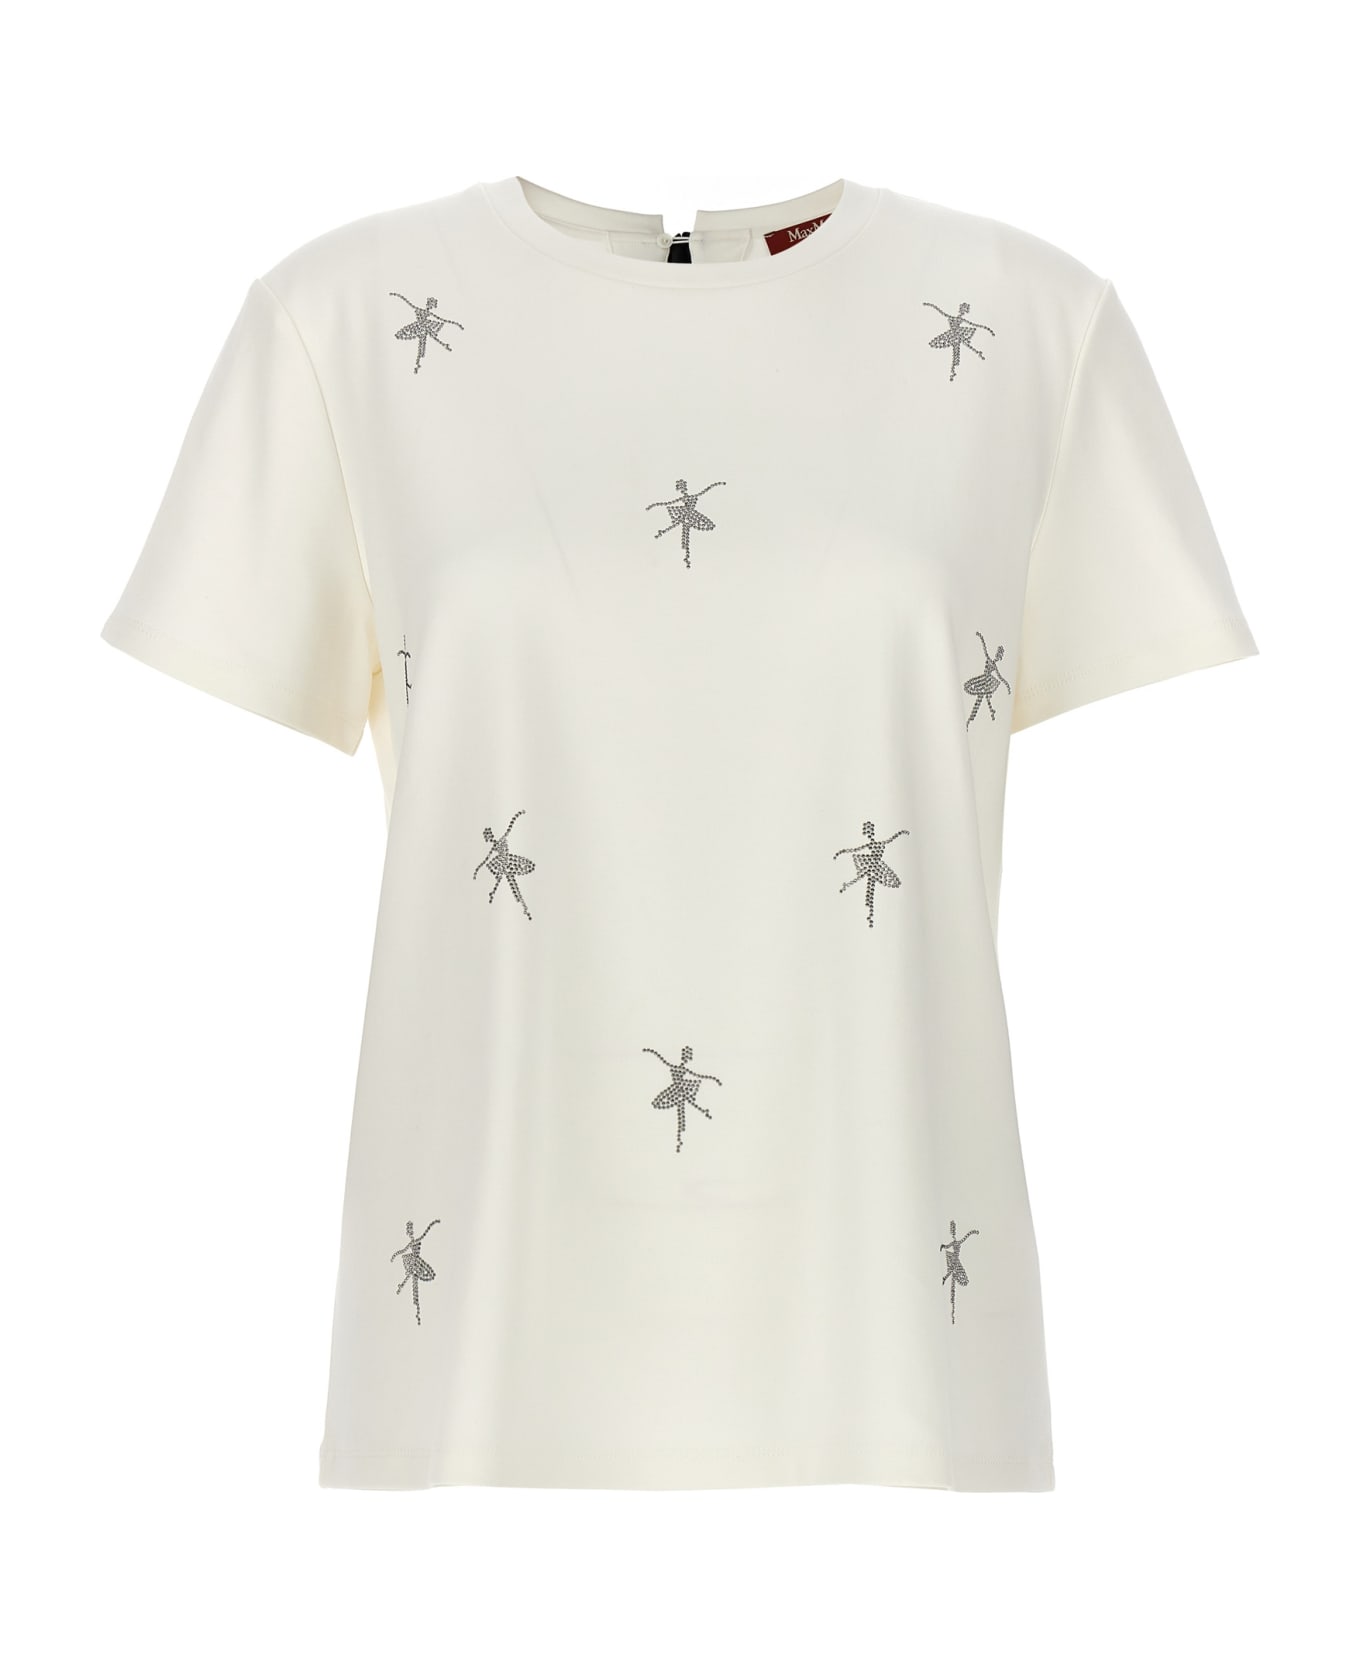 Max Mara Studio 'secchia' T-shirt - White Tシャツ